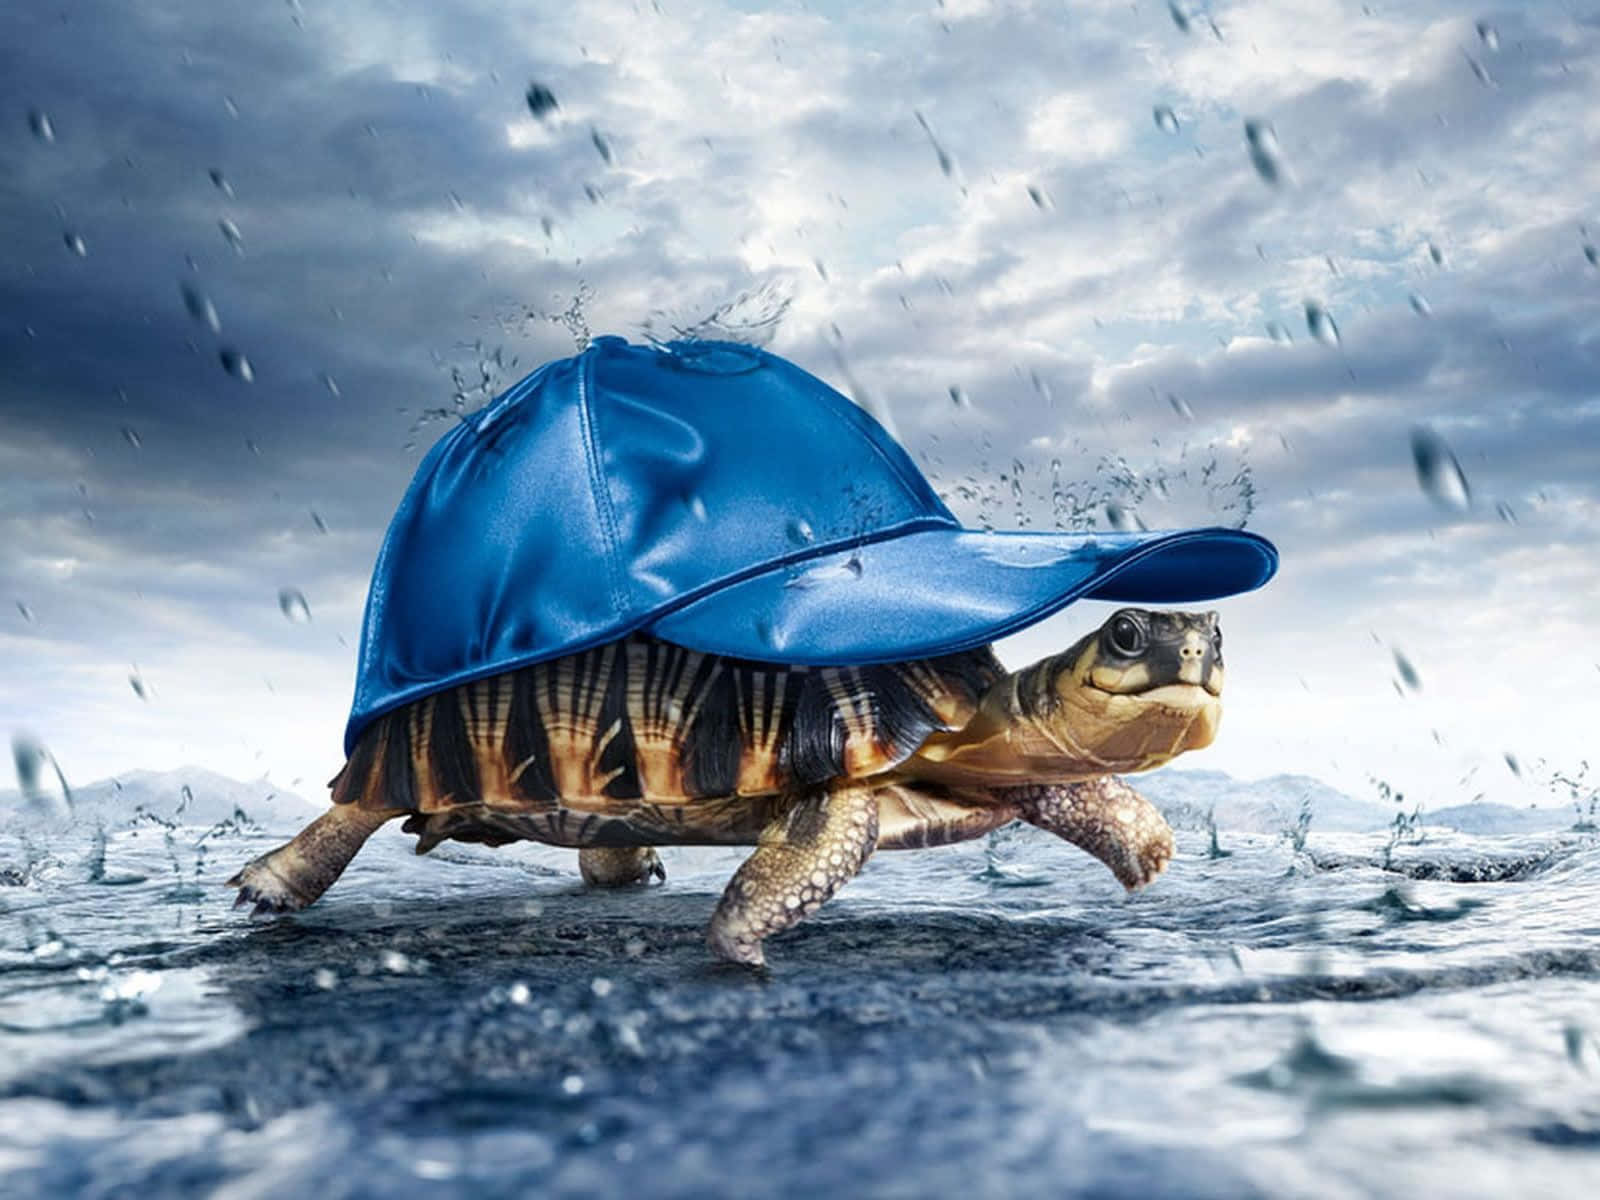 Schildkröteim Regen, Trägt Einen Blauen Hut.